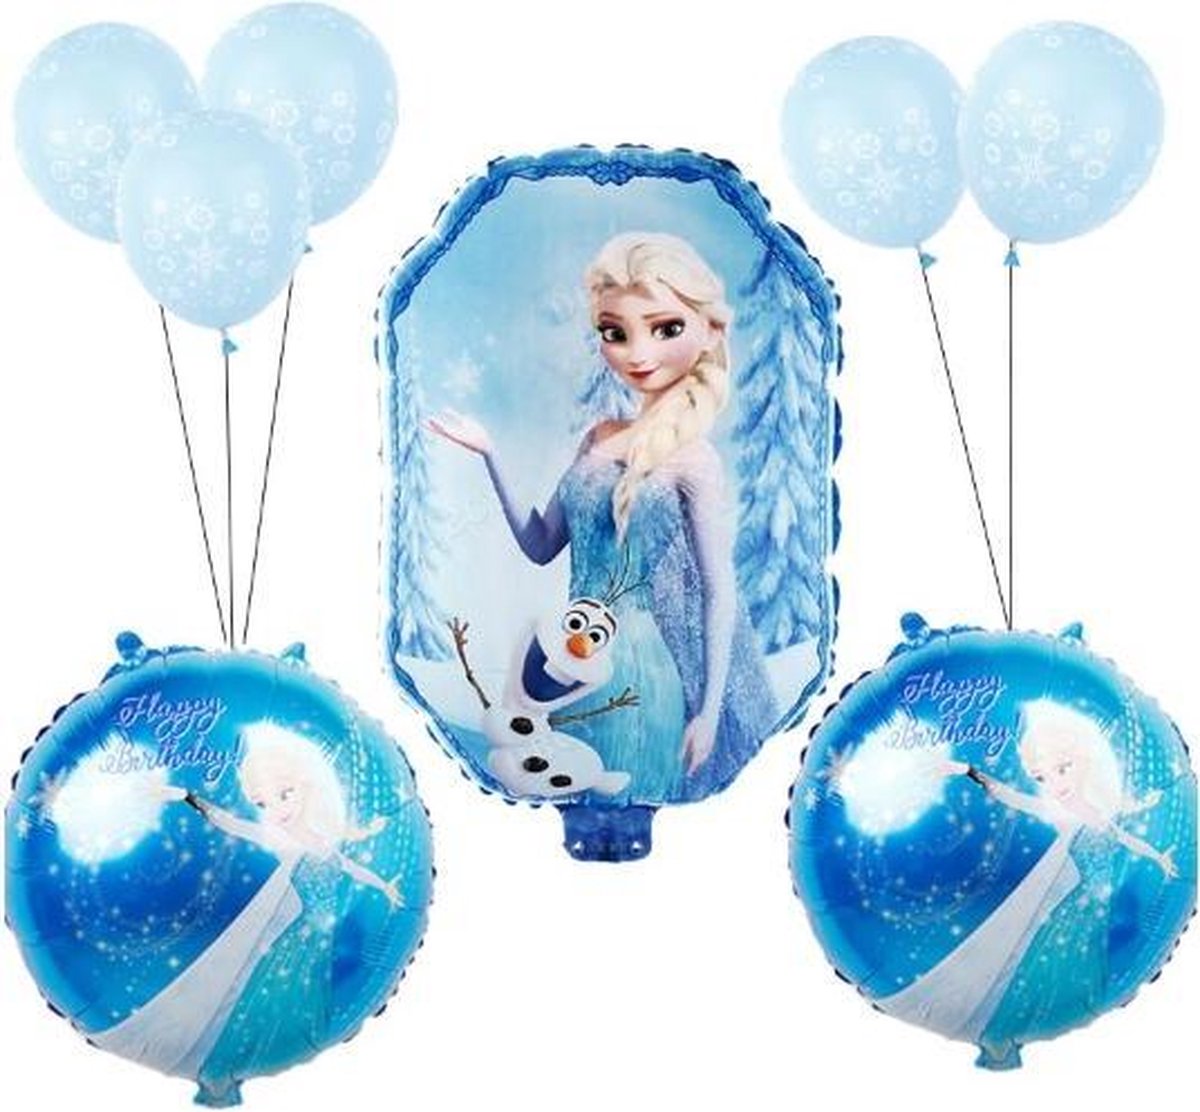 Frozen Ballonnen set | 9 stuks | Elsa Folie ballonnen | Frozen versiering |  bol.com